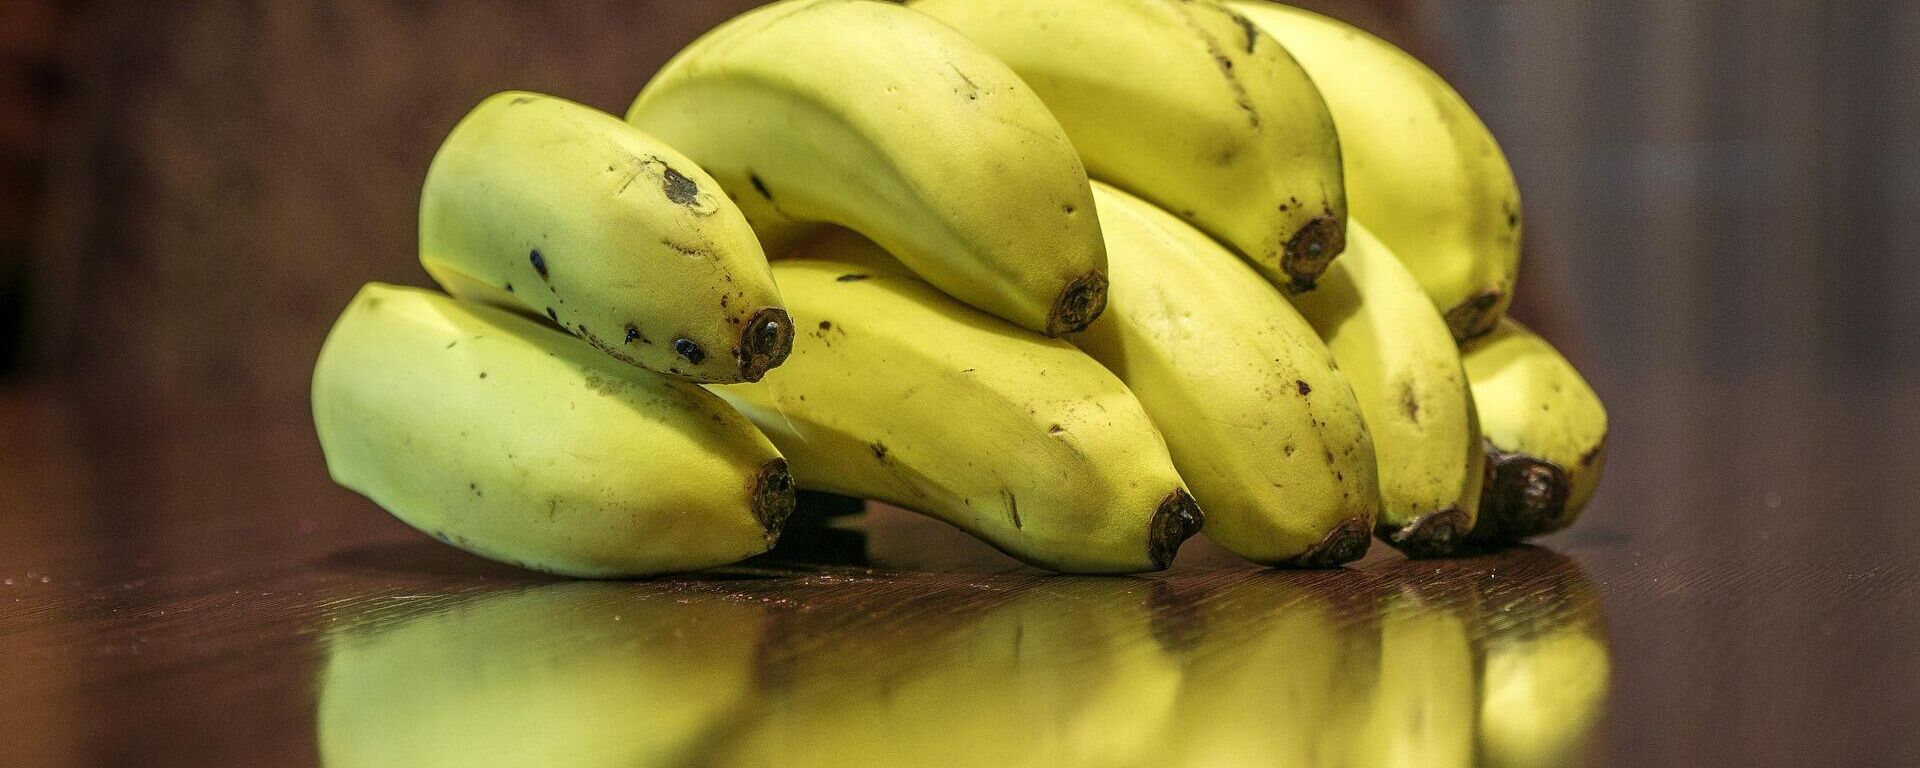 Bananas, plátanos o guineos - Sputnik Mundo, 1920, 26.02.2021